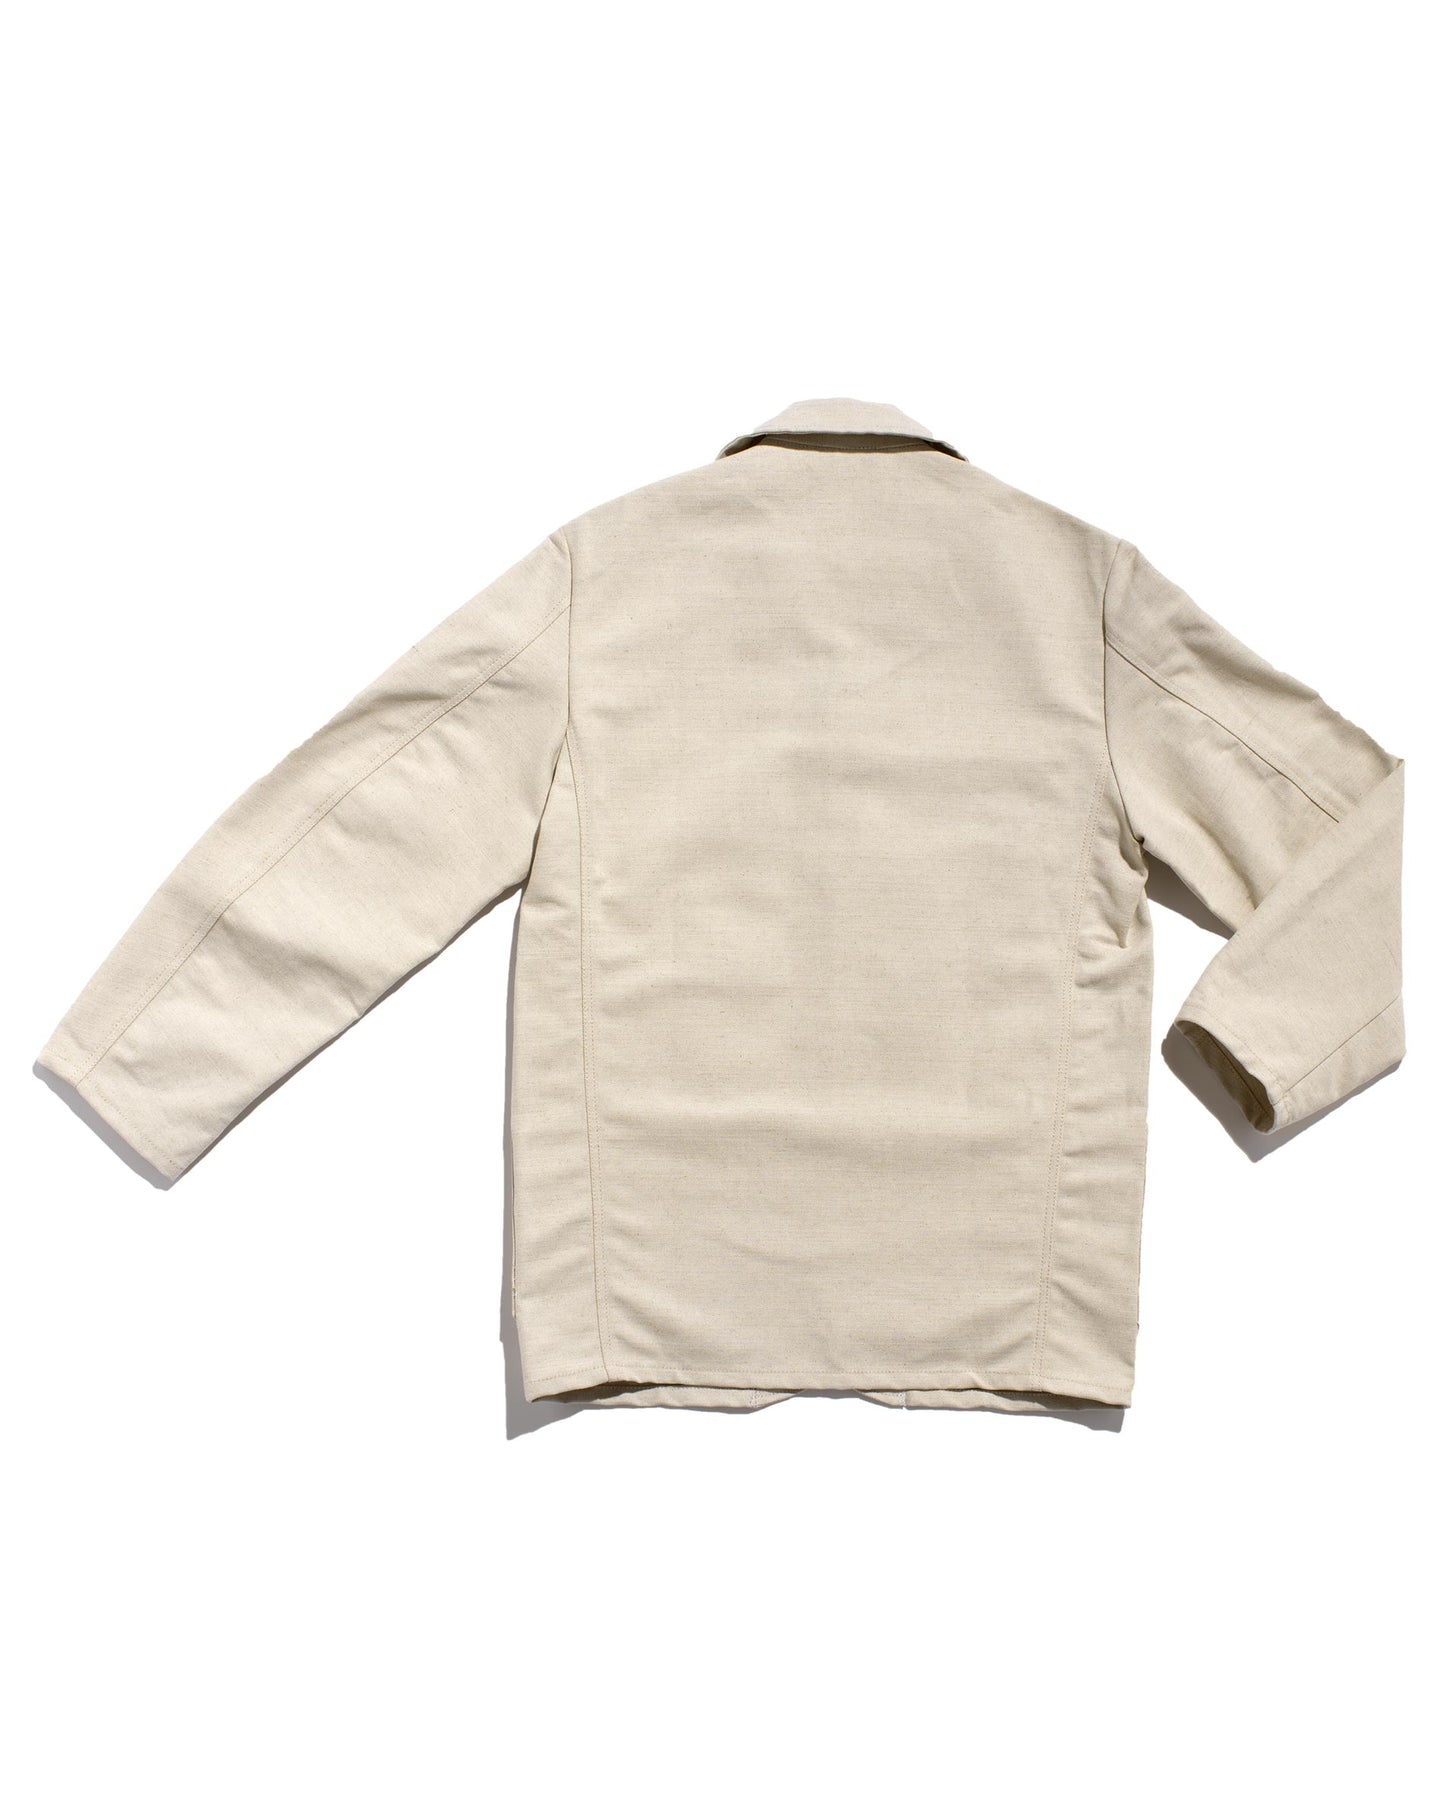 Le Laboureur linen/ecru cotton sports jacket